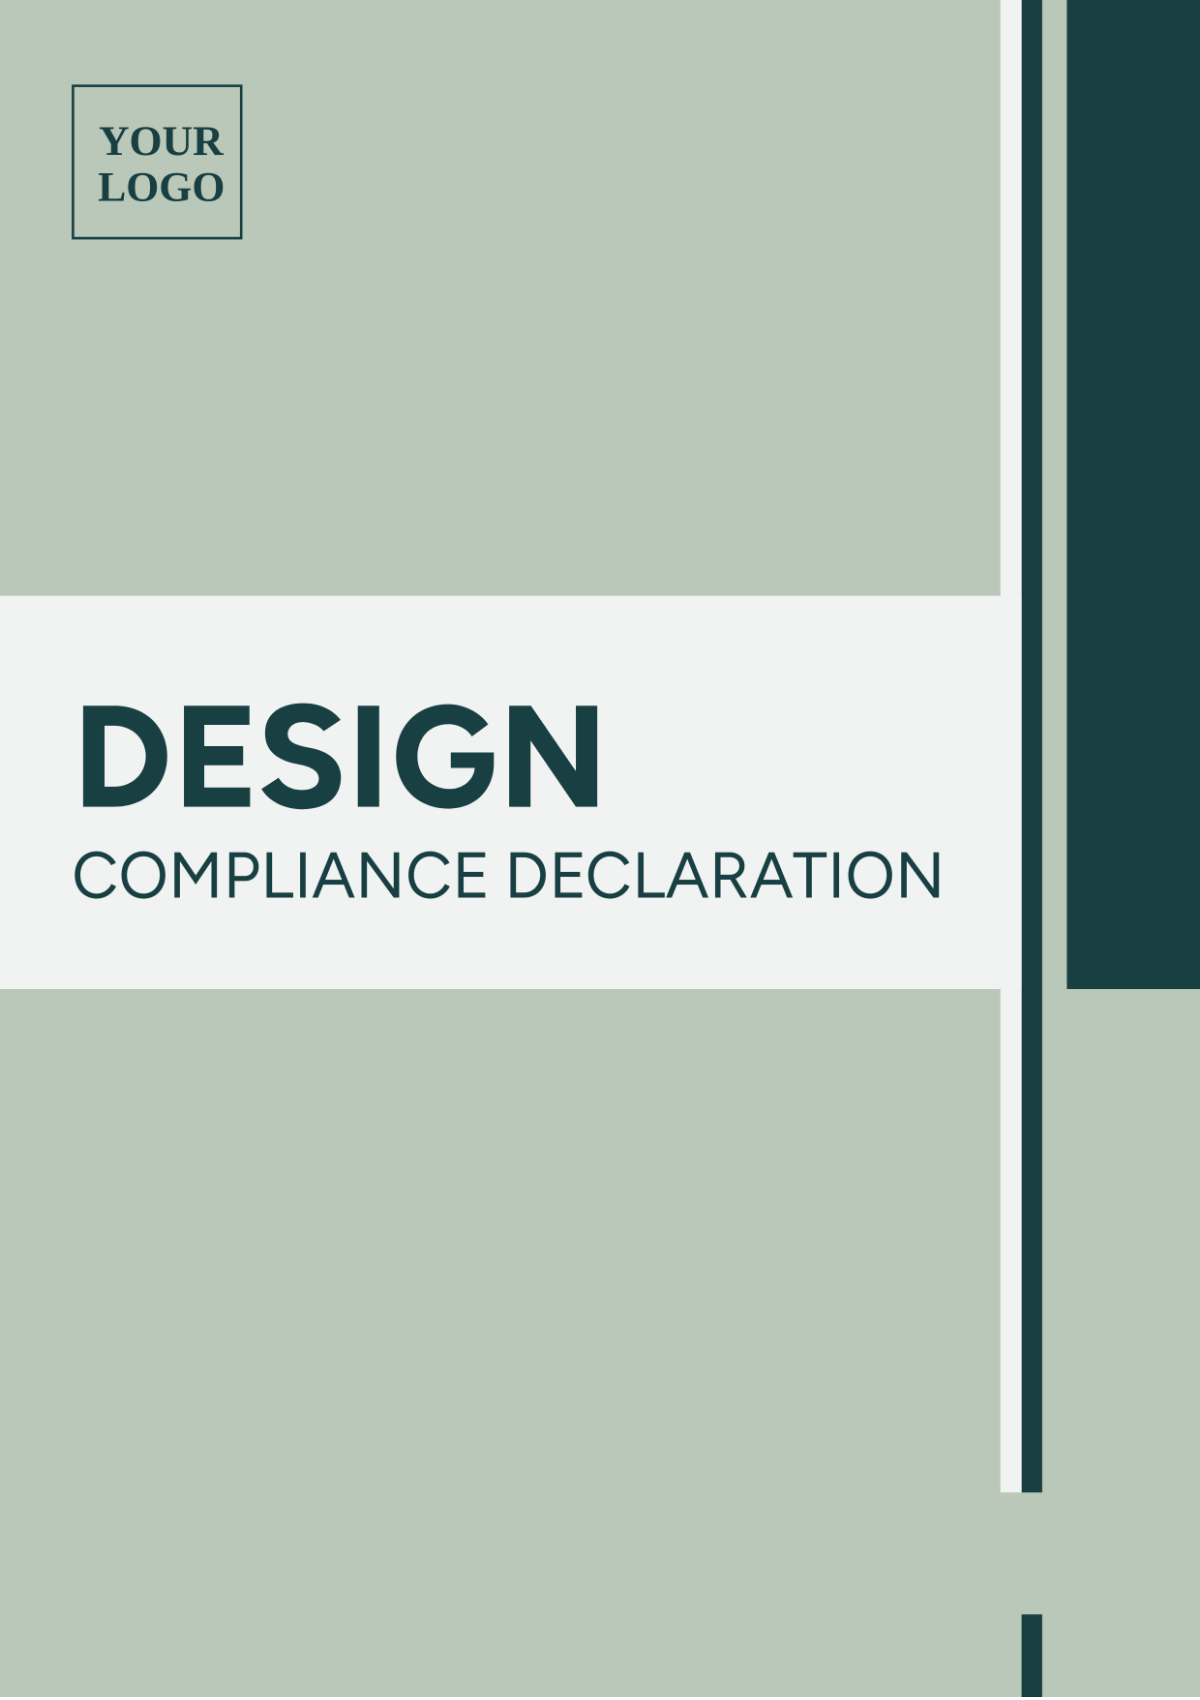 Design Compliance Declaration Template